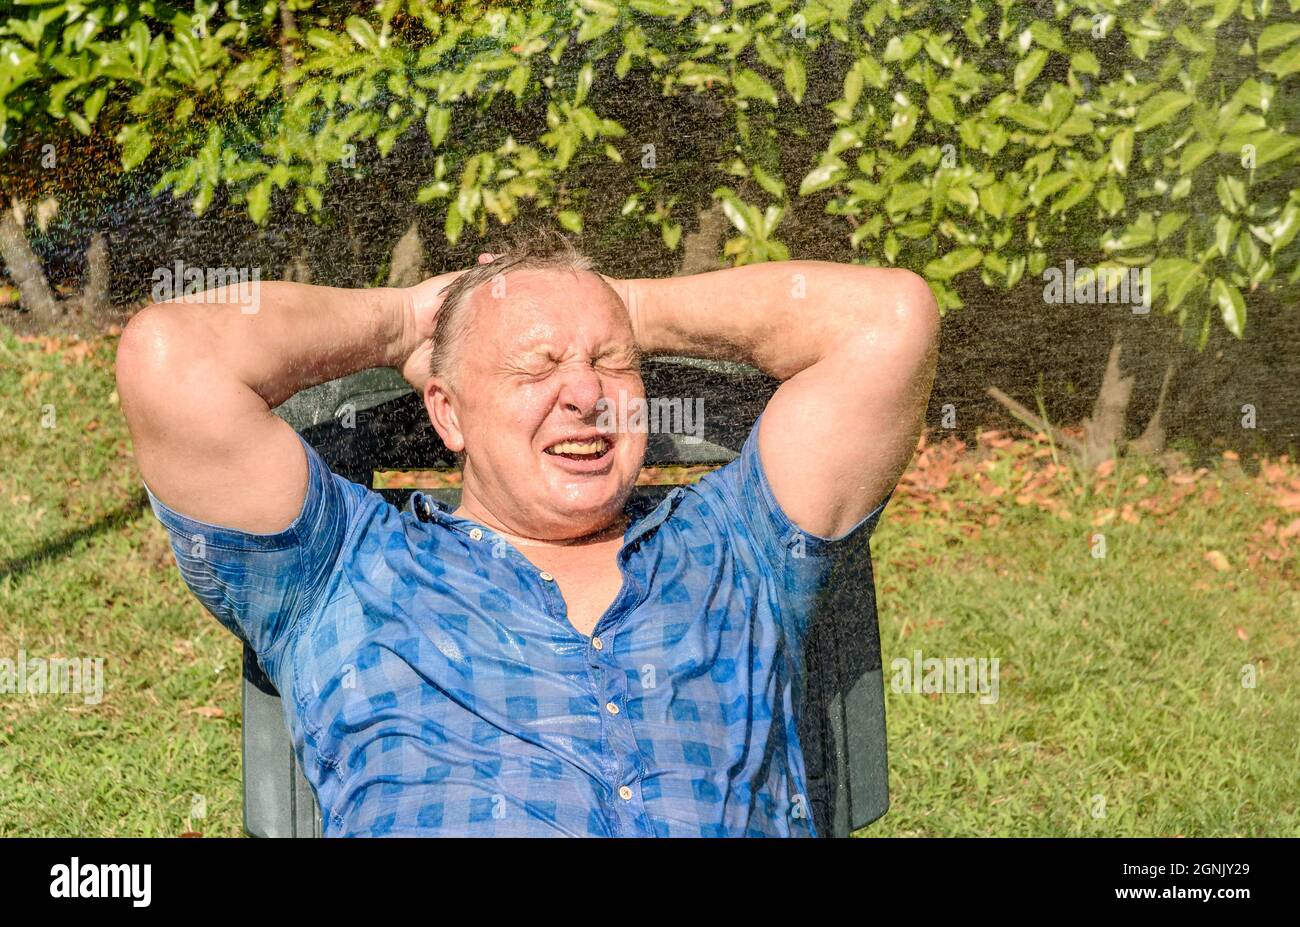 Porträt eines glücklichen reifen Mannes unter spritzendem Wasser an einem heißen Tag im Garten. Stockfoto